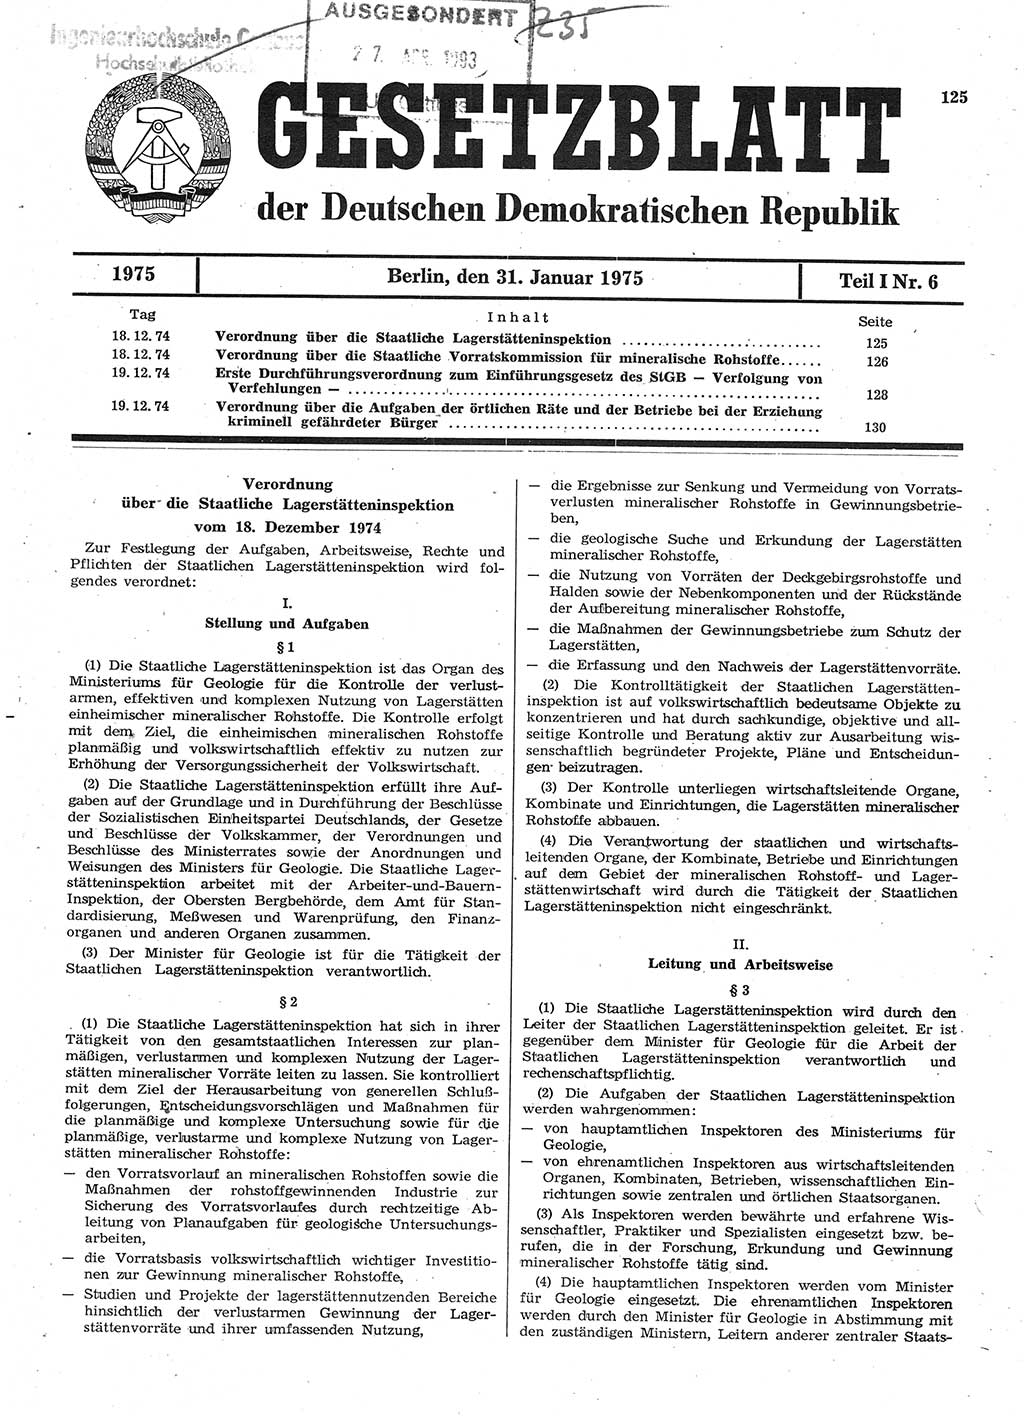 Gesetzblatt (GBl.) der Deutschen Demokratischen Republik (DDR) Teil Ⅰ 1975, Seite 125 (GBl. DDR Ⅰ 1975, S. 125)